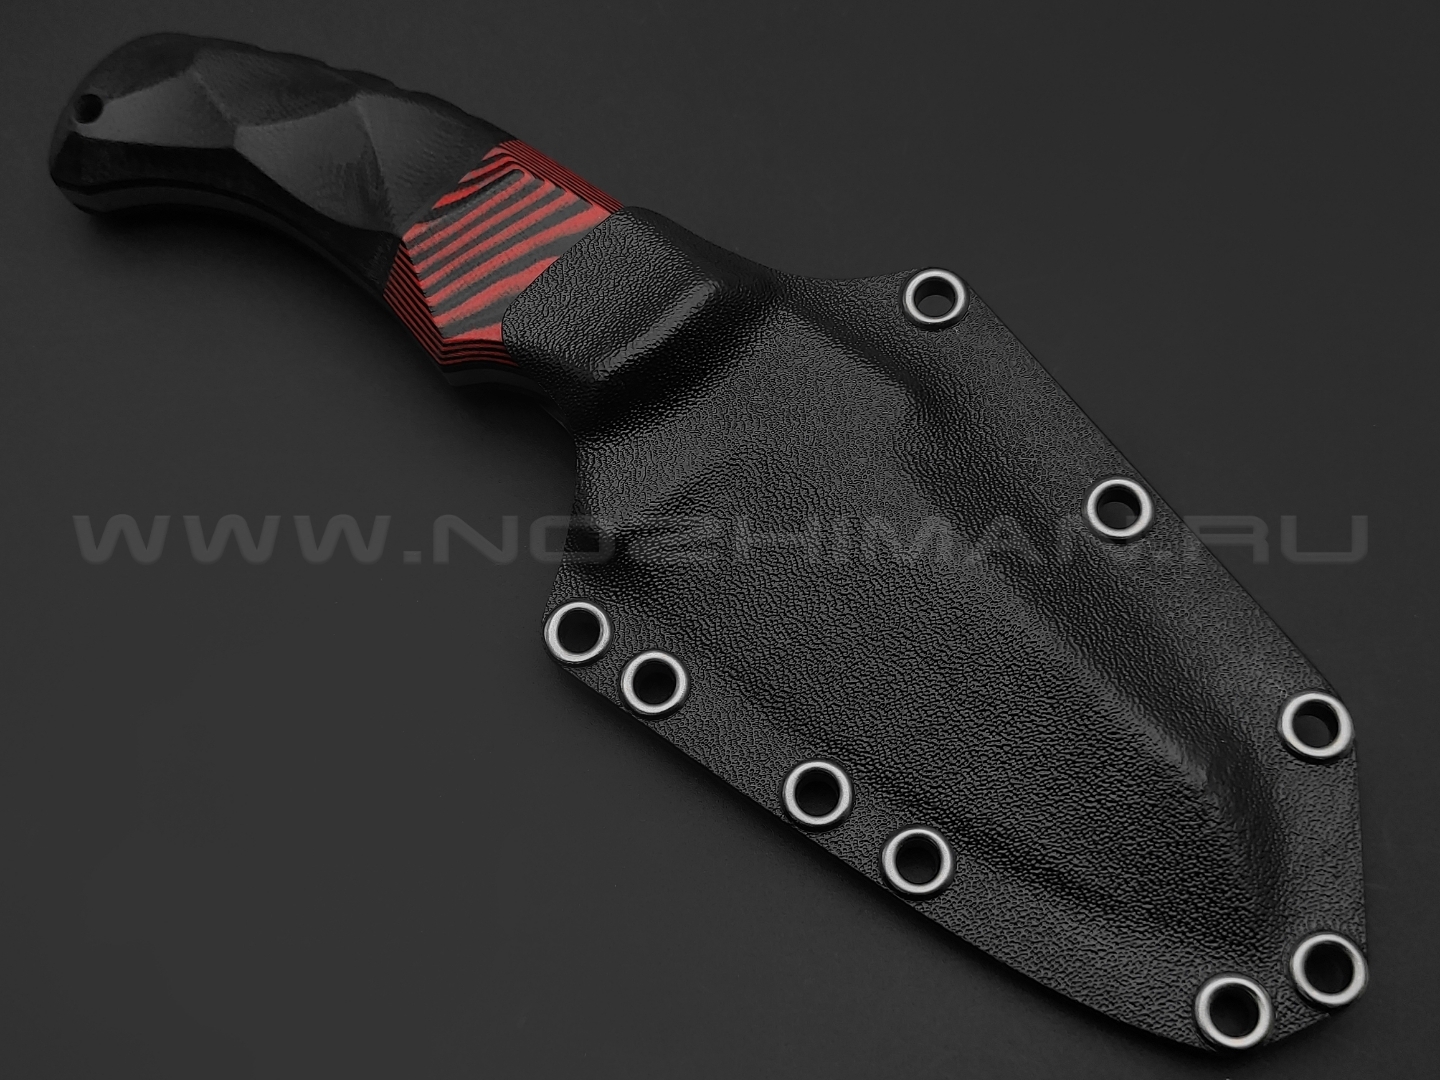 Волчий Век нож Сквозняк Brutal Edition сталь D2 WA satin, рукоять G10 black & red